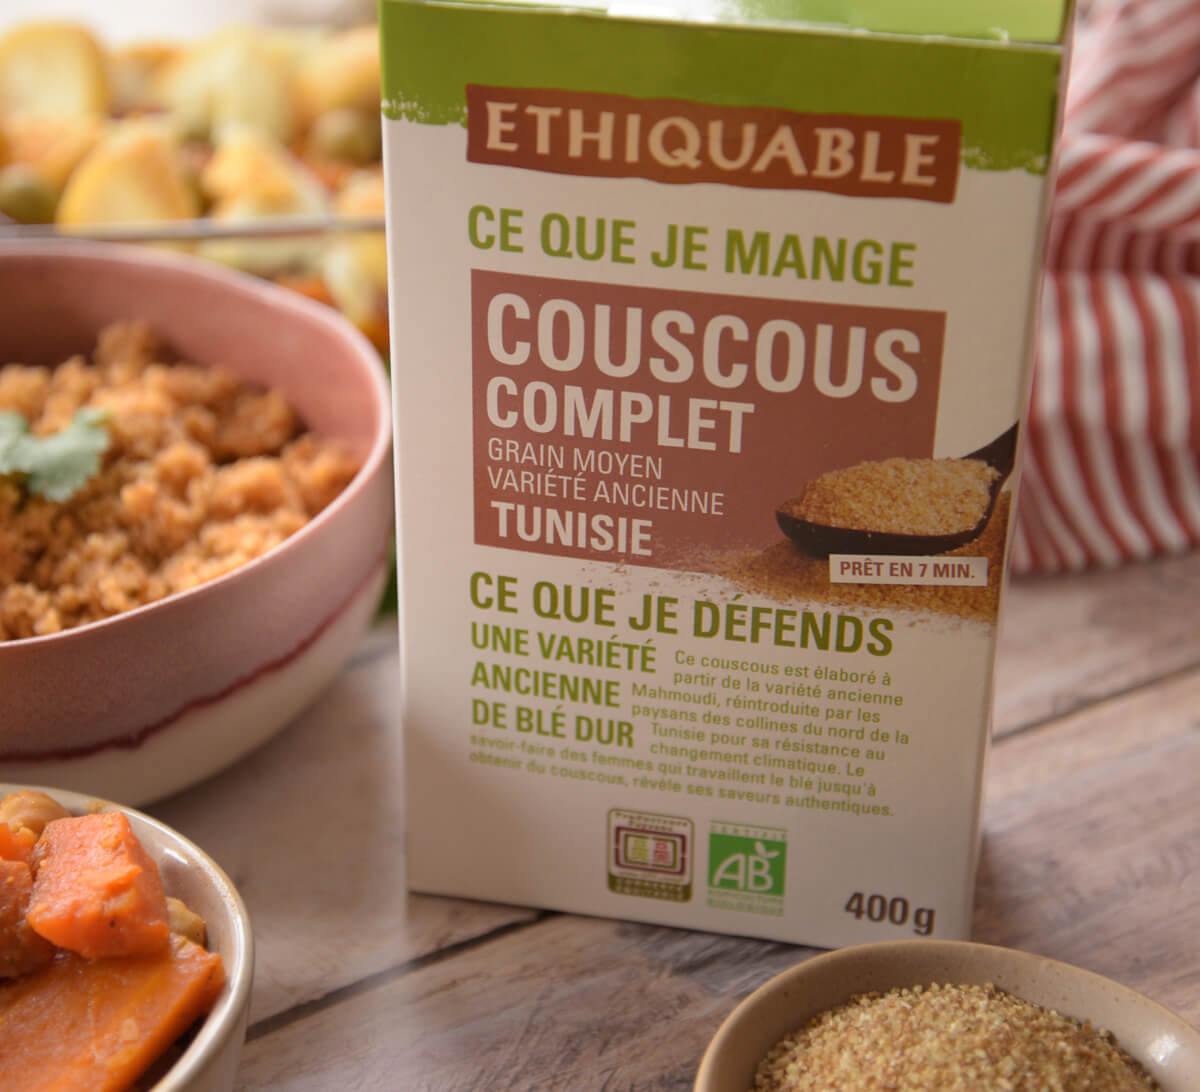 Ethiquable- Couscous complet blé ancien de Tunisie bio et issu du Commerce équitable